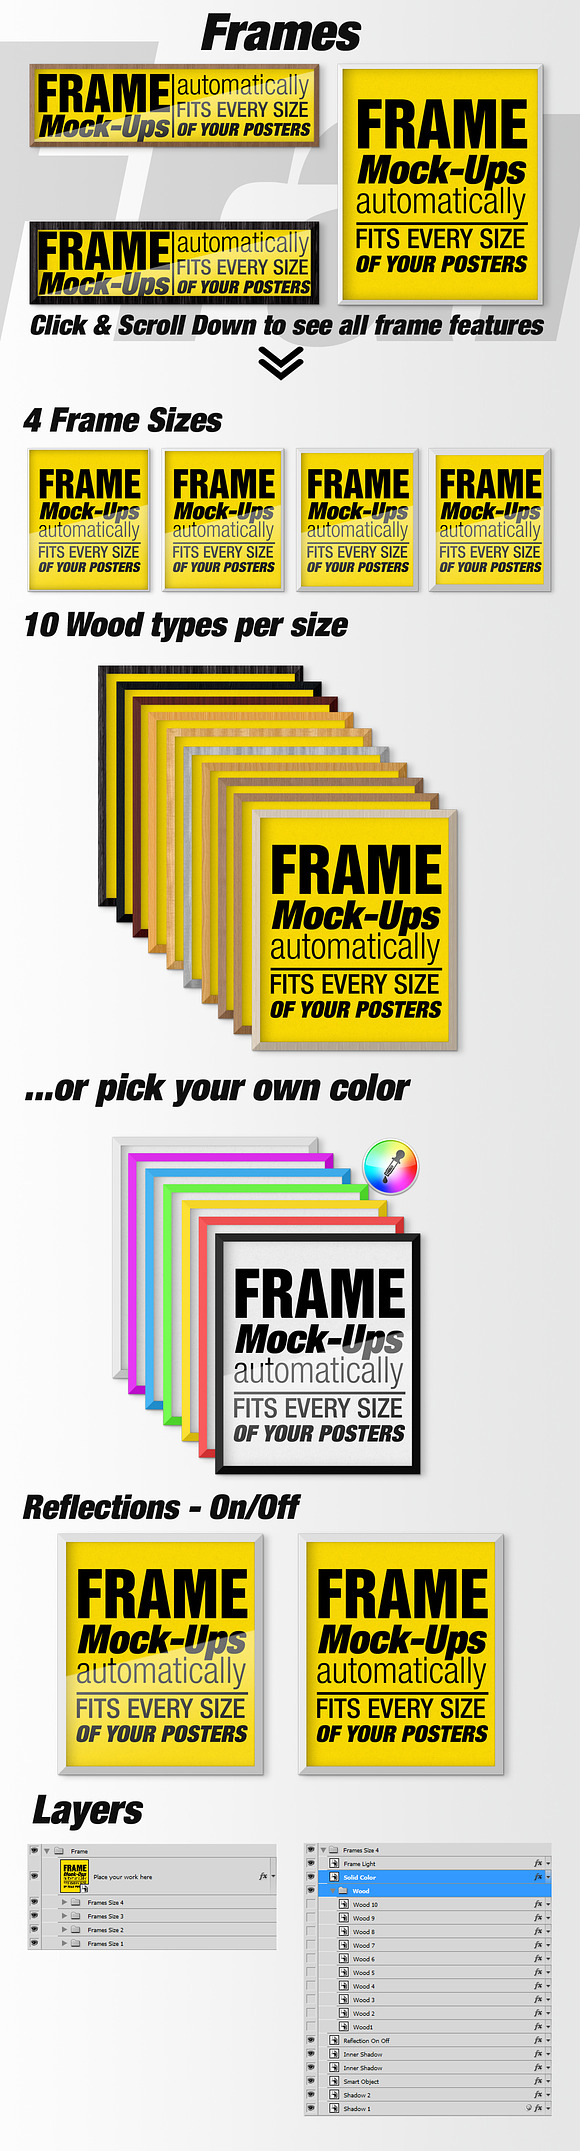 Canvas Mockups - Frames Mockups v 52 in Print Mockups - product preview 6